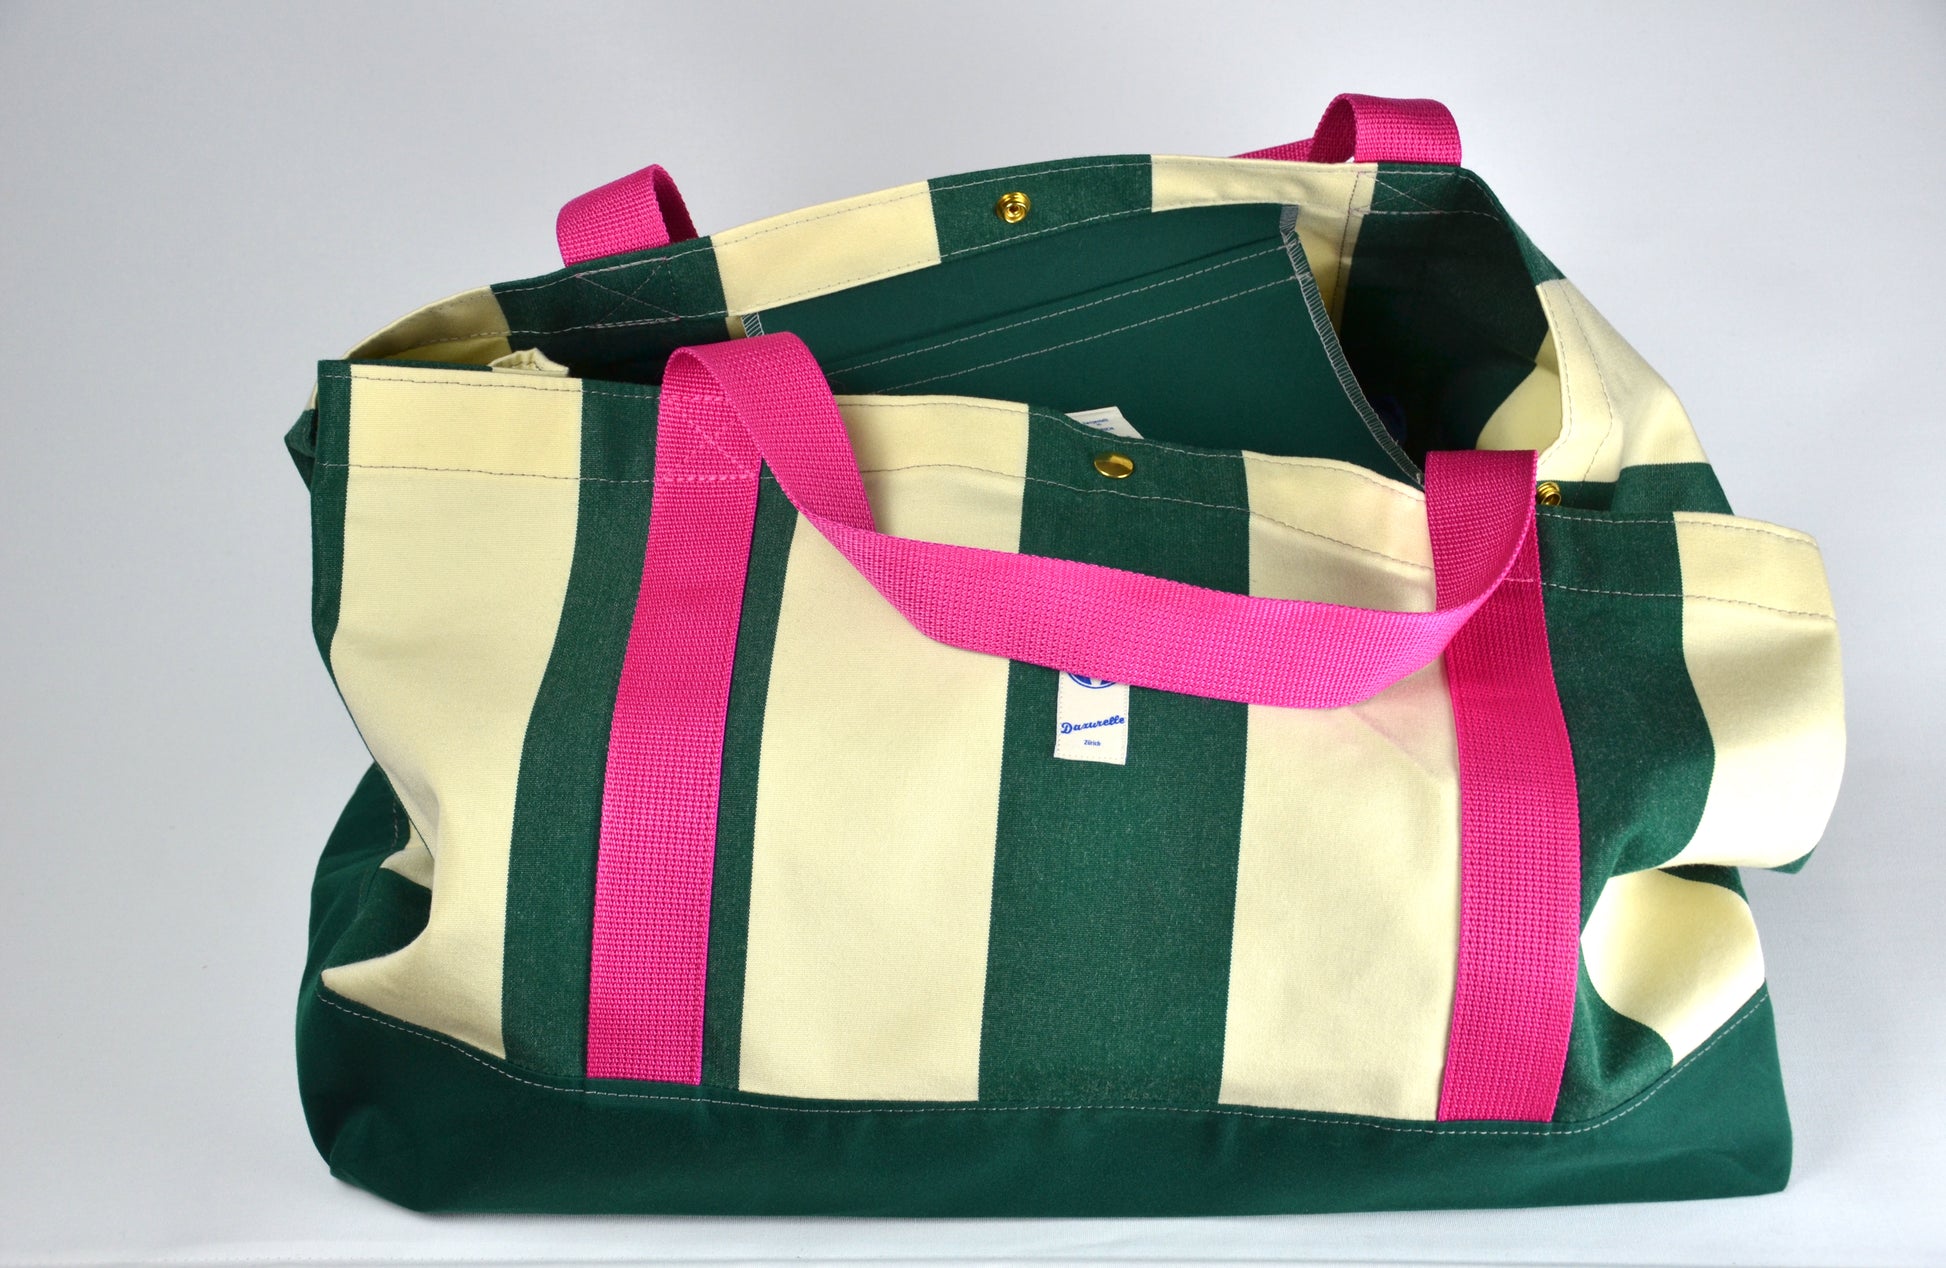 Strandtassche Dazurelle. Beachbag made in Zürich. Swiss Design Bag